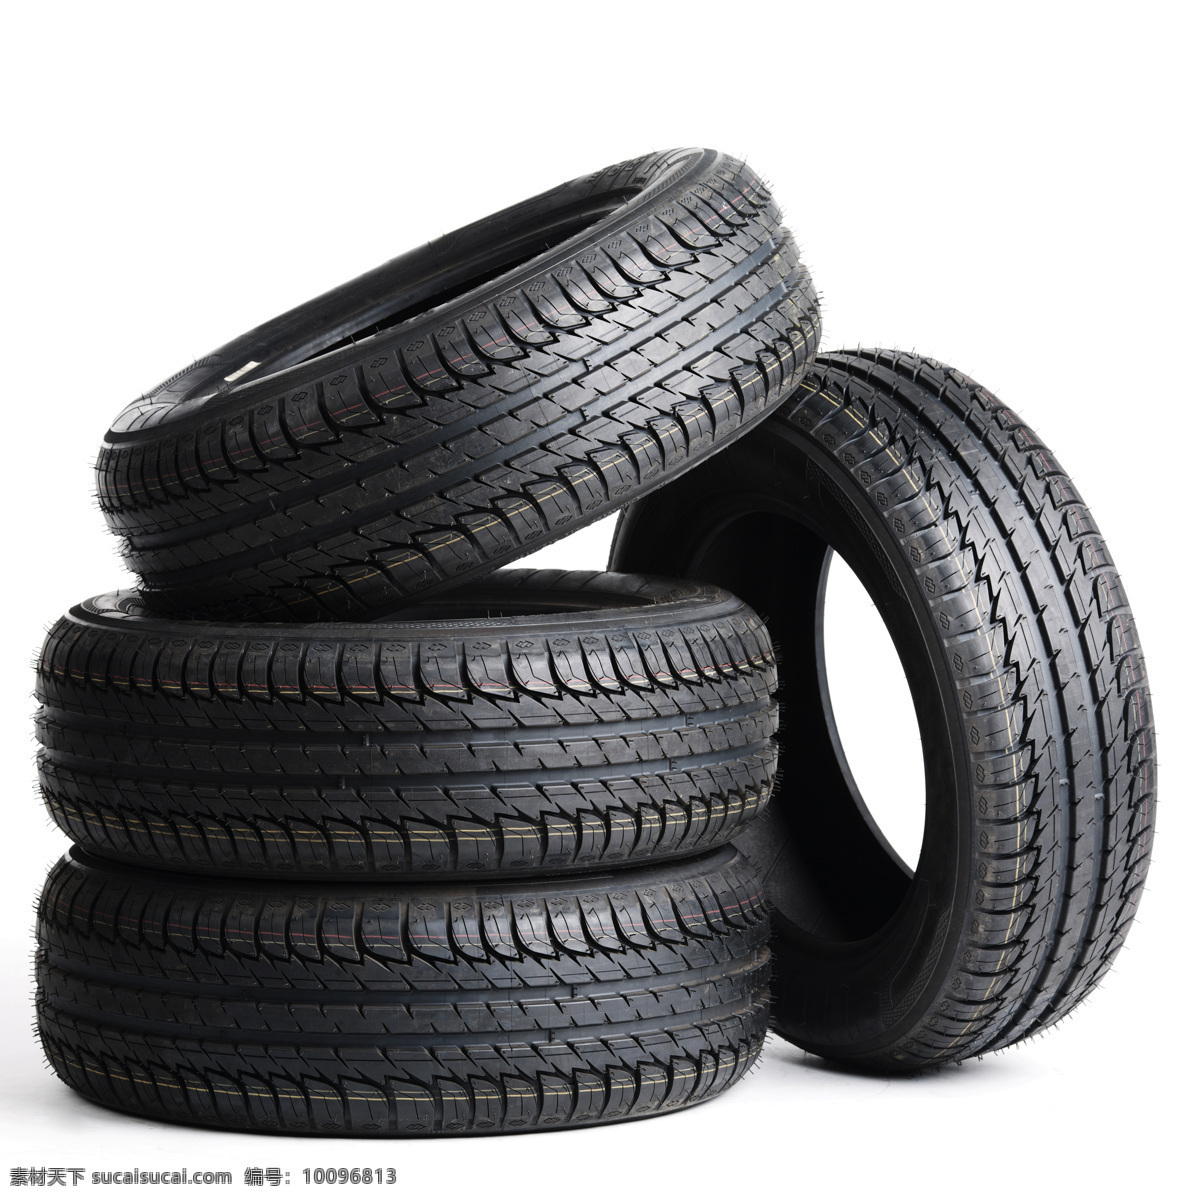 汽车轮胎 新轮胎 外胎 橡胶轮胎 黑色轮胎 废弃轮胎 现代科技 交通工具